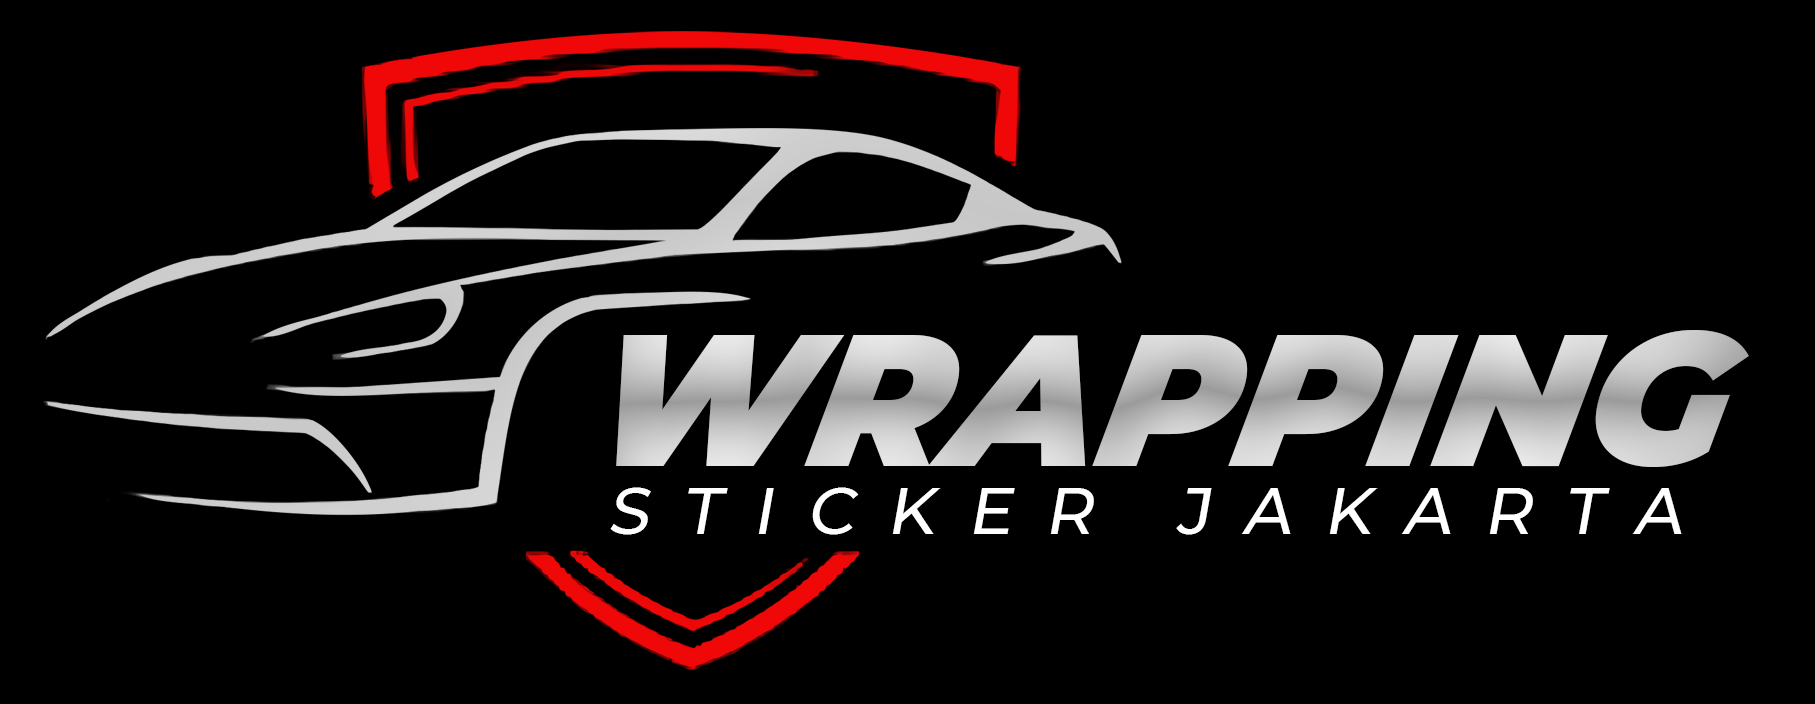 logo wrapping sticker jakarta new ok